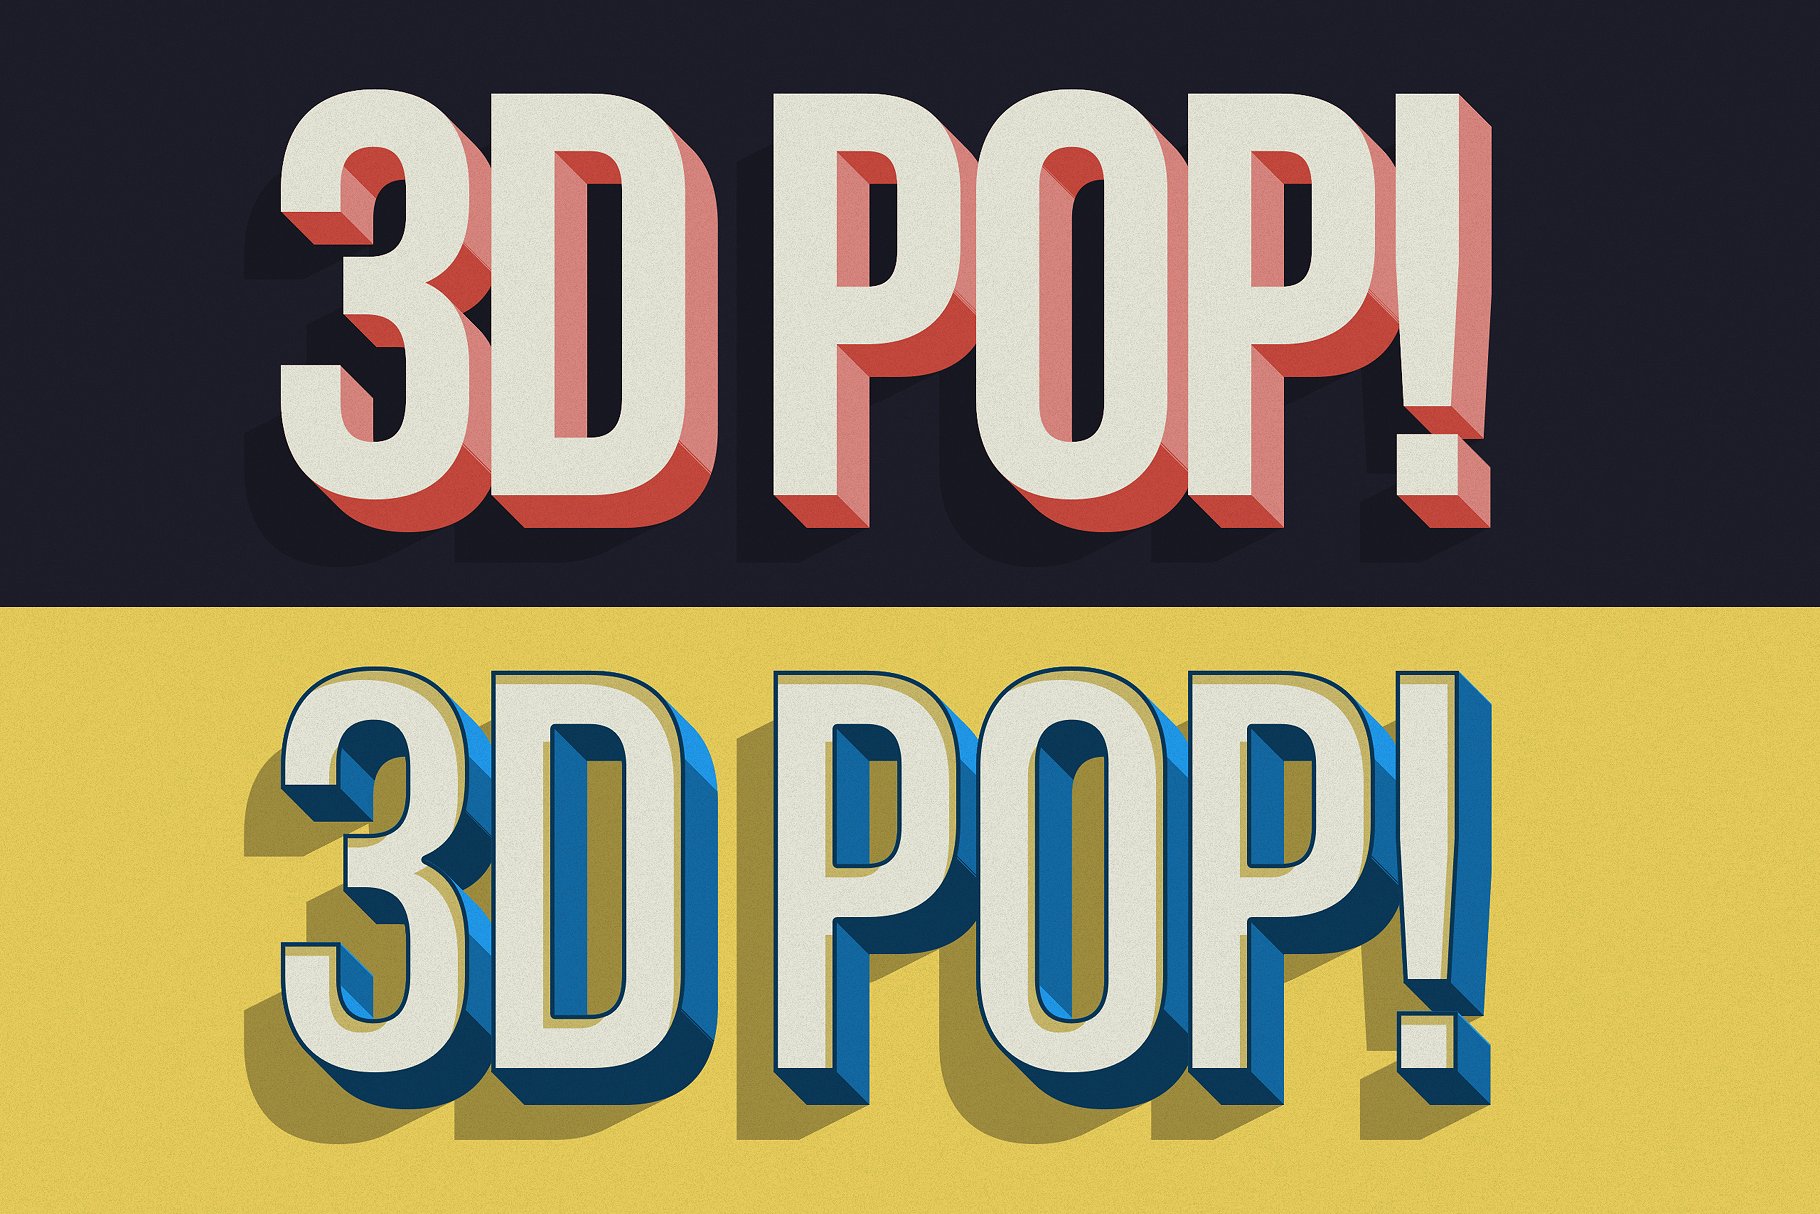 10款“吸睛大法”3D立体文字图层样式 3D POP! Photoshop Effects插图(7)